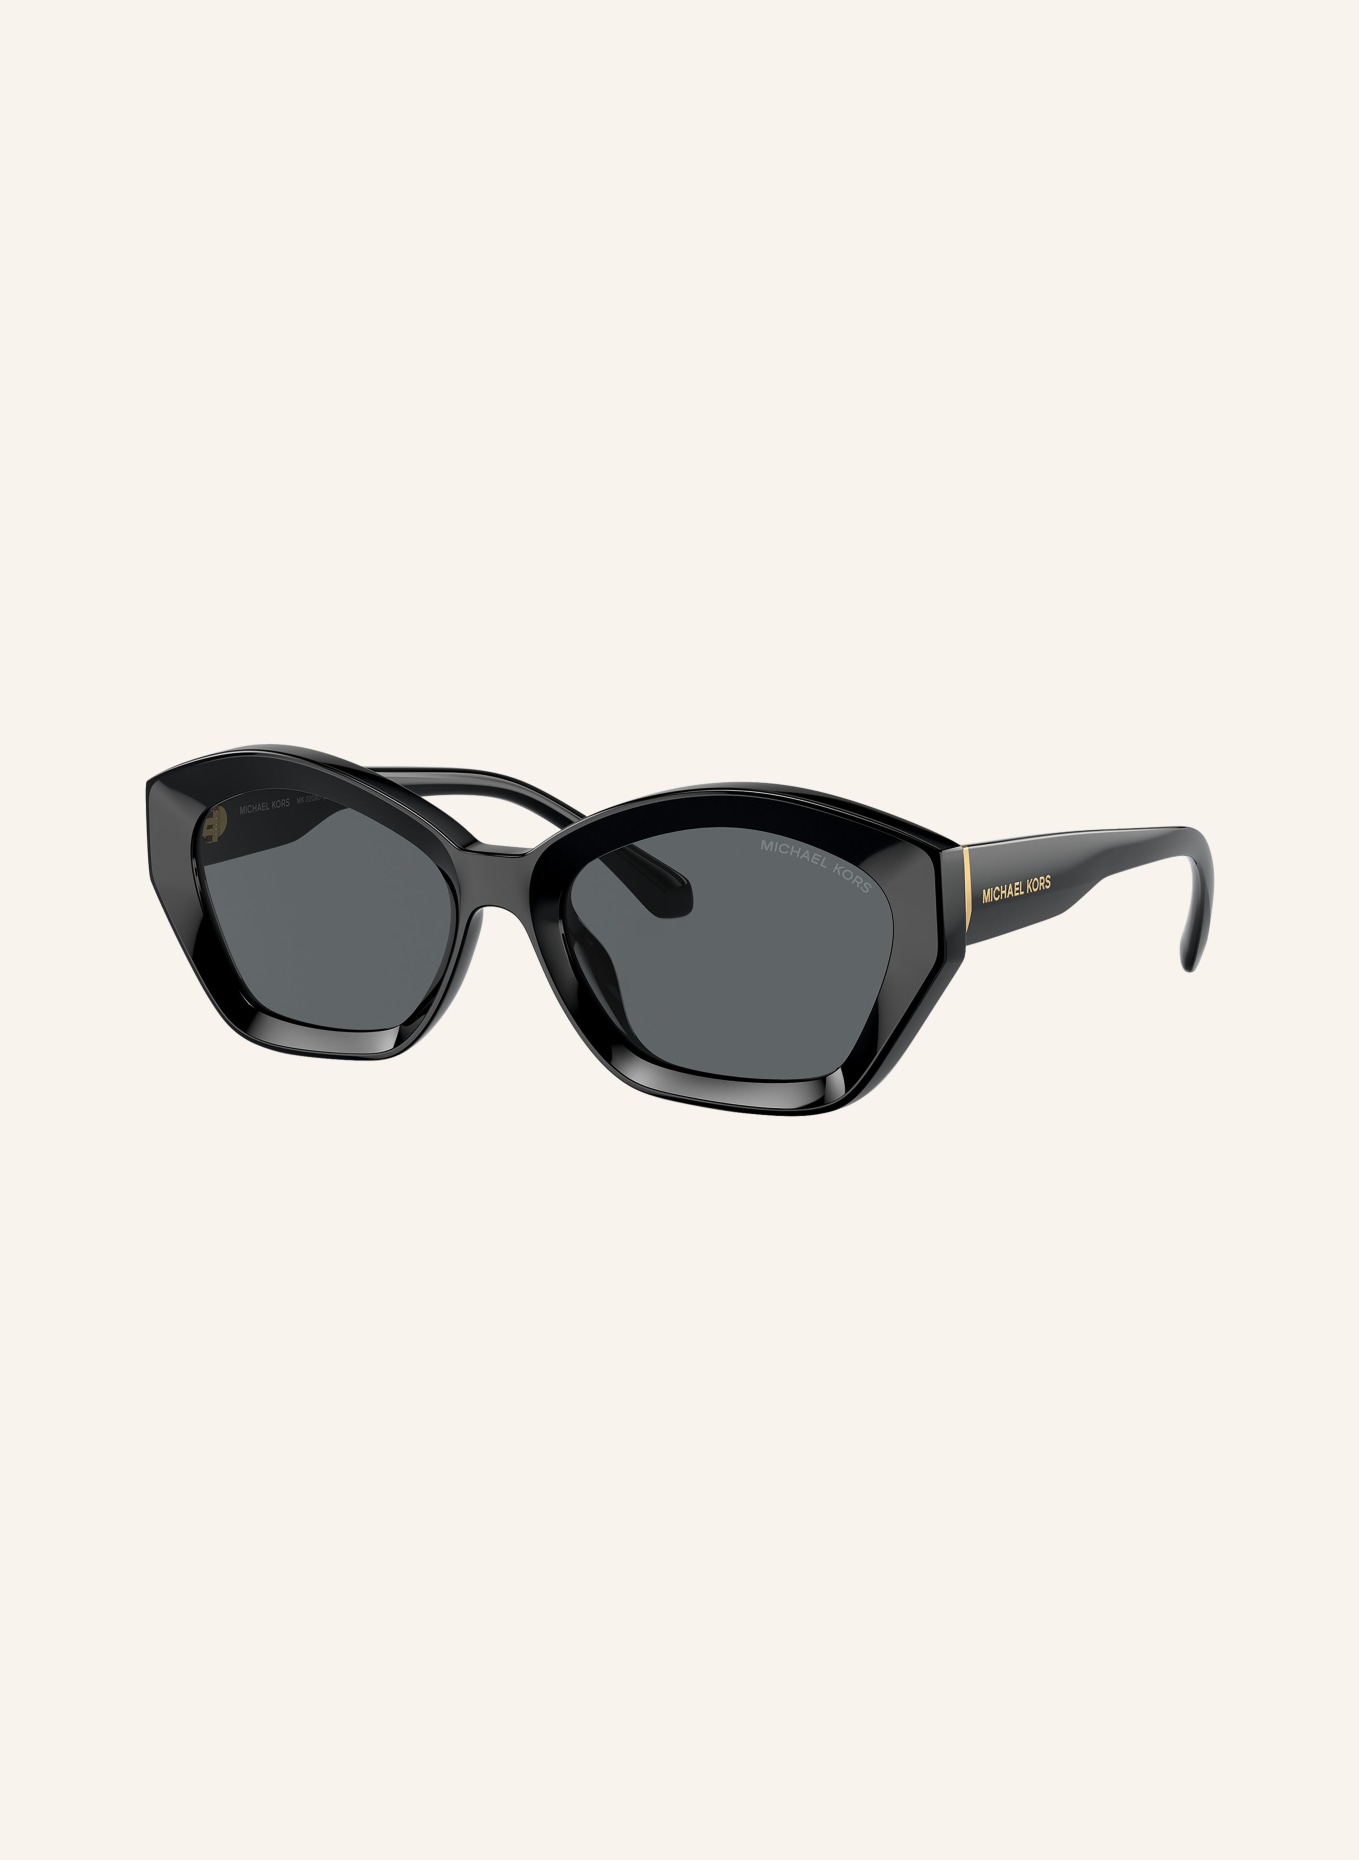 MICHAEL KORS Sunglasses MK2209U BEL AIR, Color: 300587 - BLACK/GRAY (Image 1)